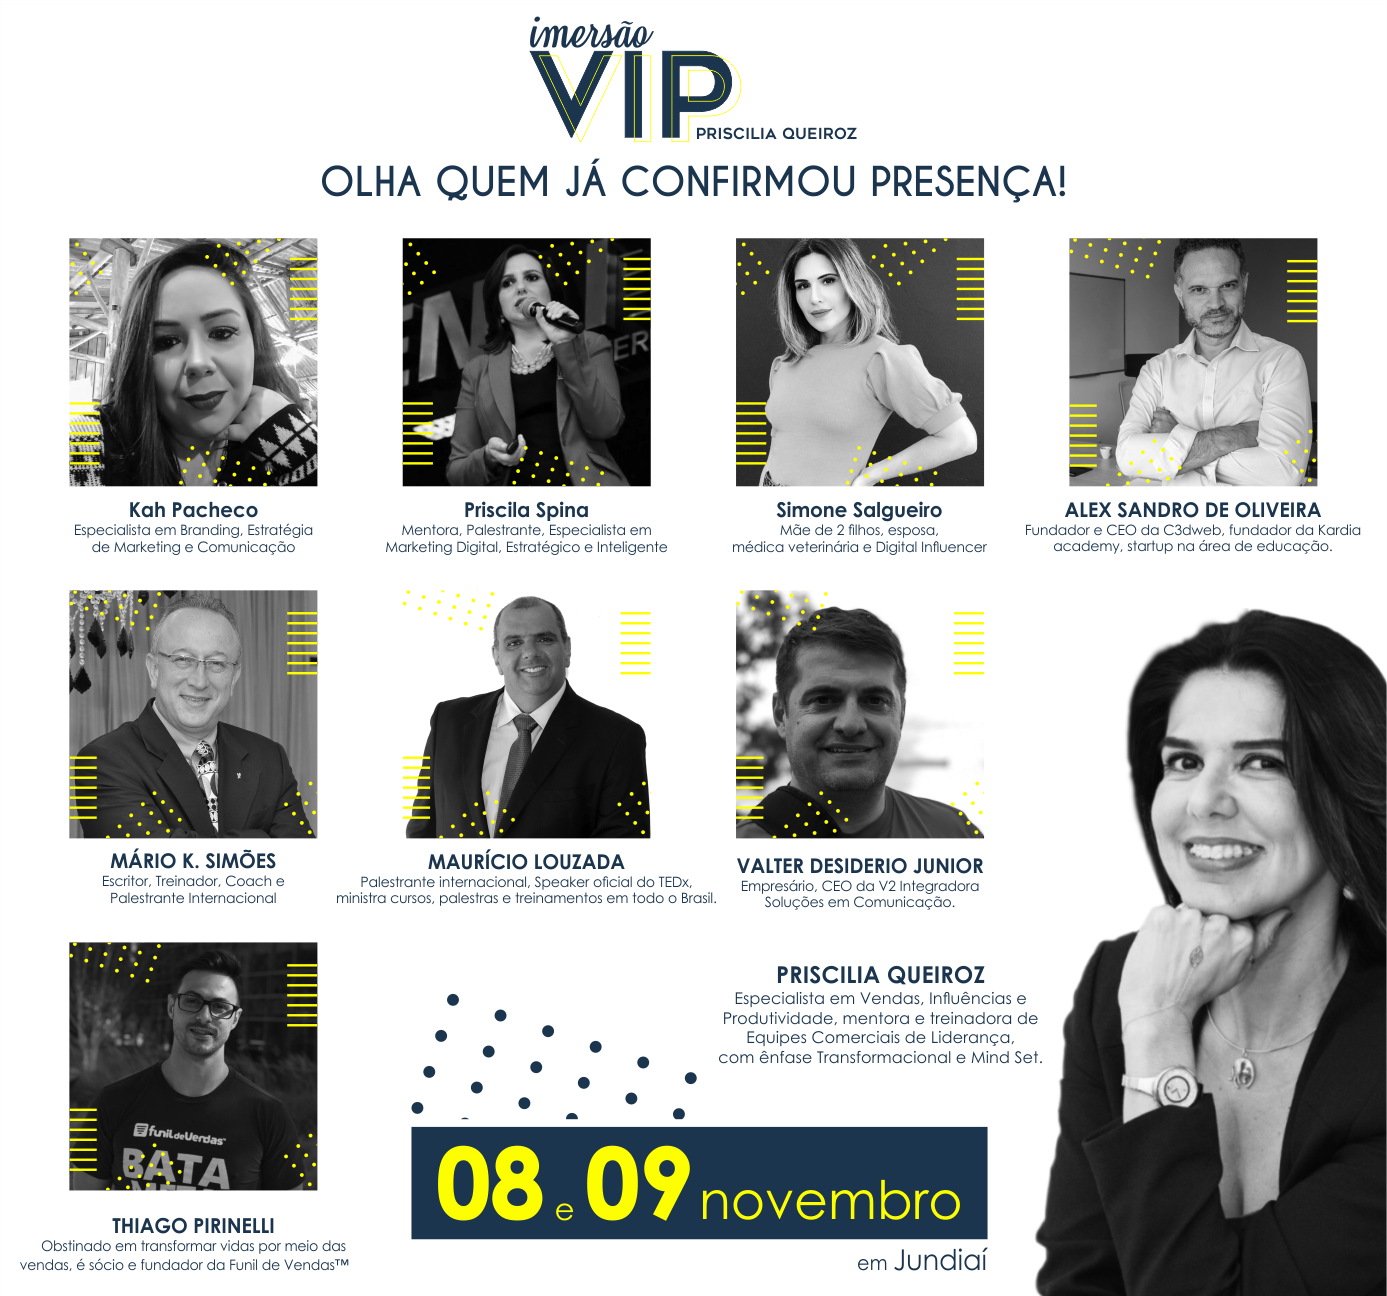 Imersão VIP - Priscilia Queiroz - Events Promoter